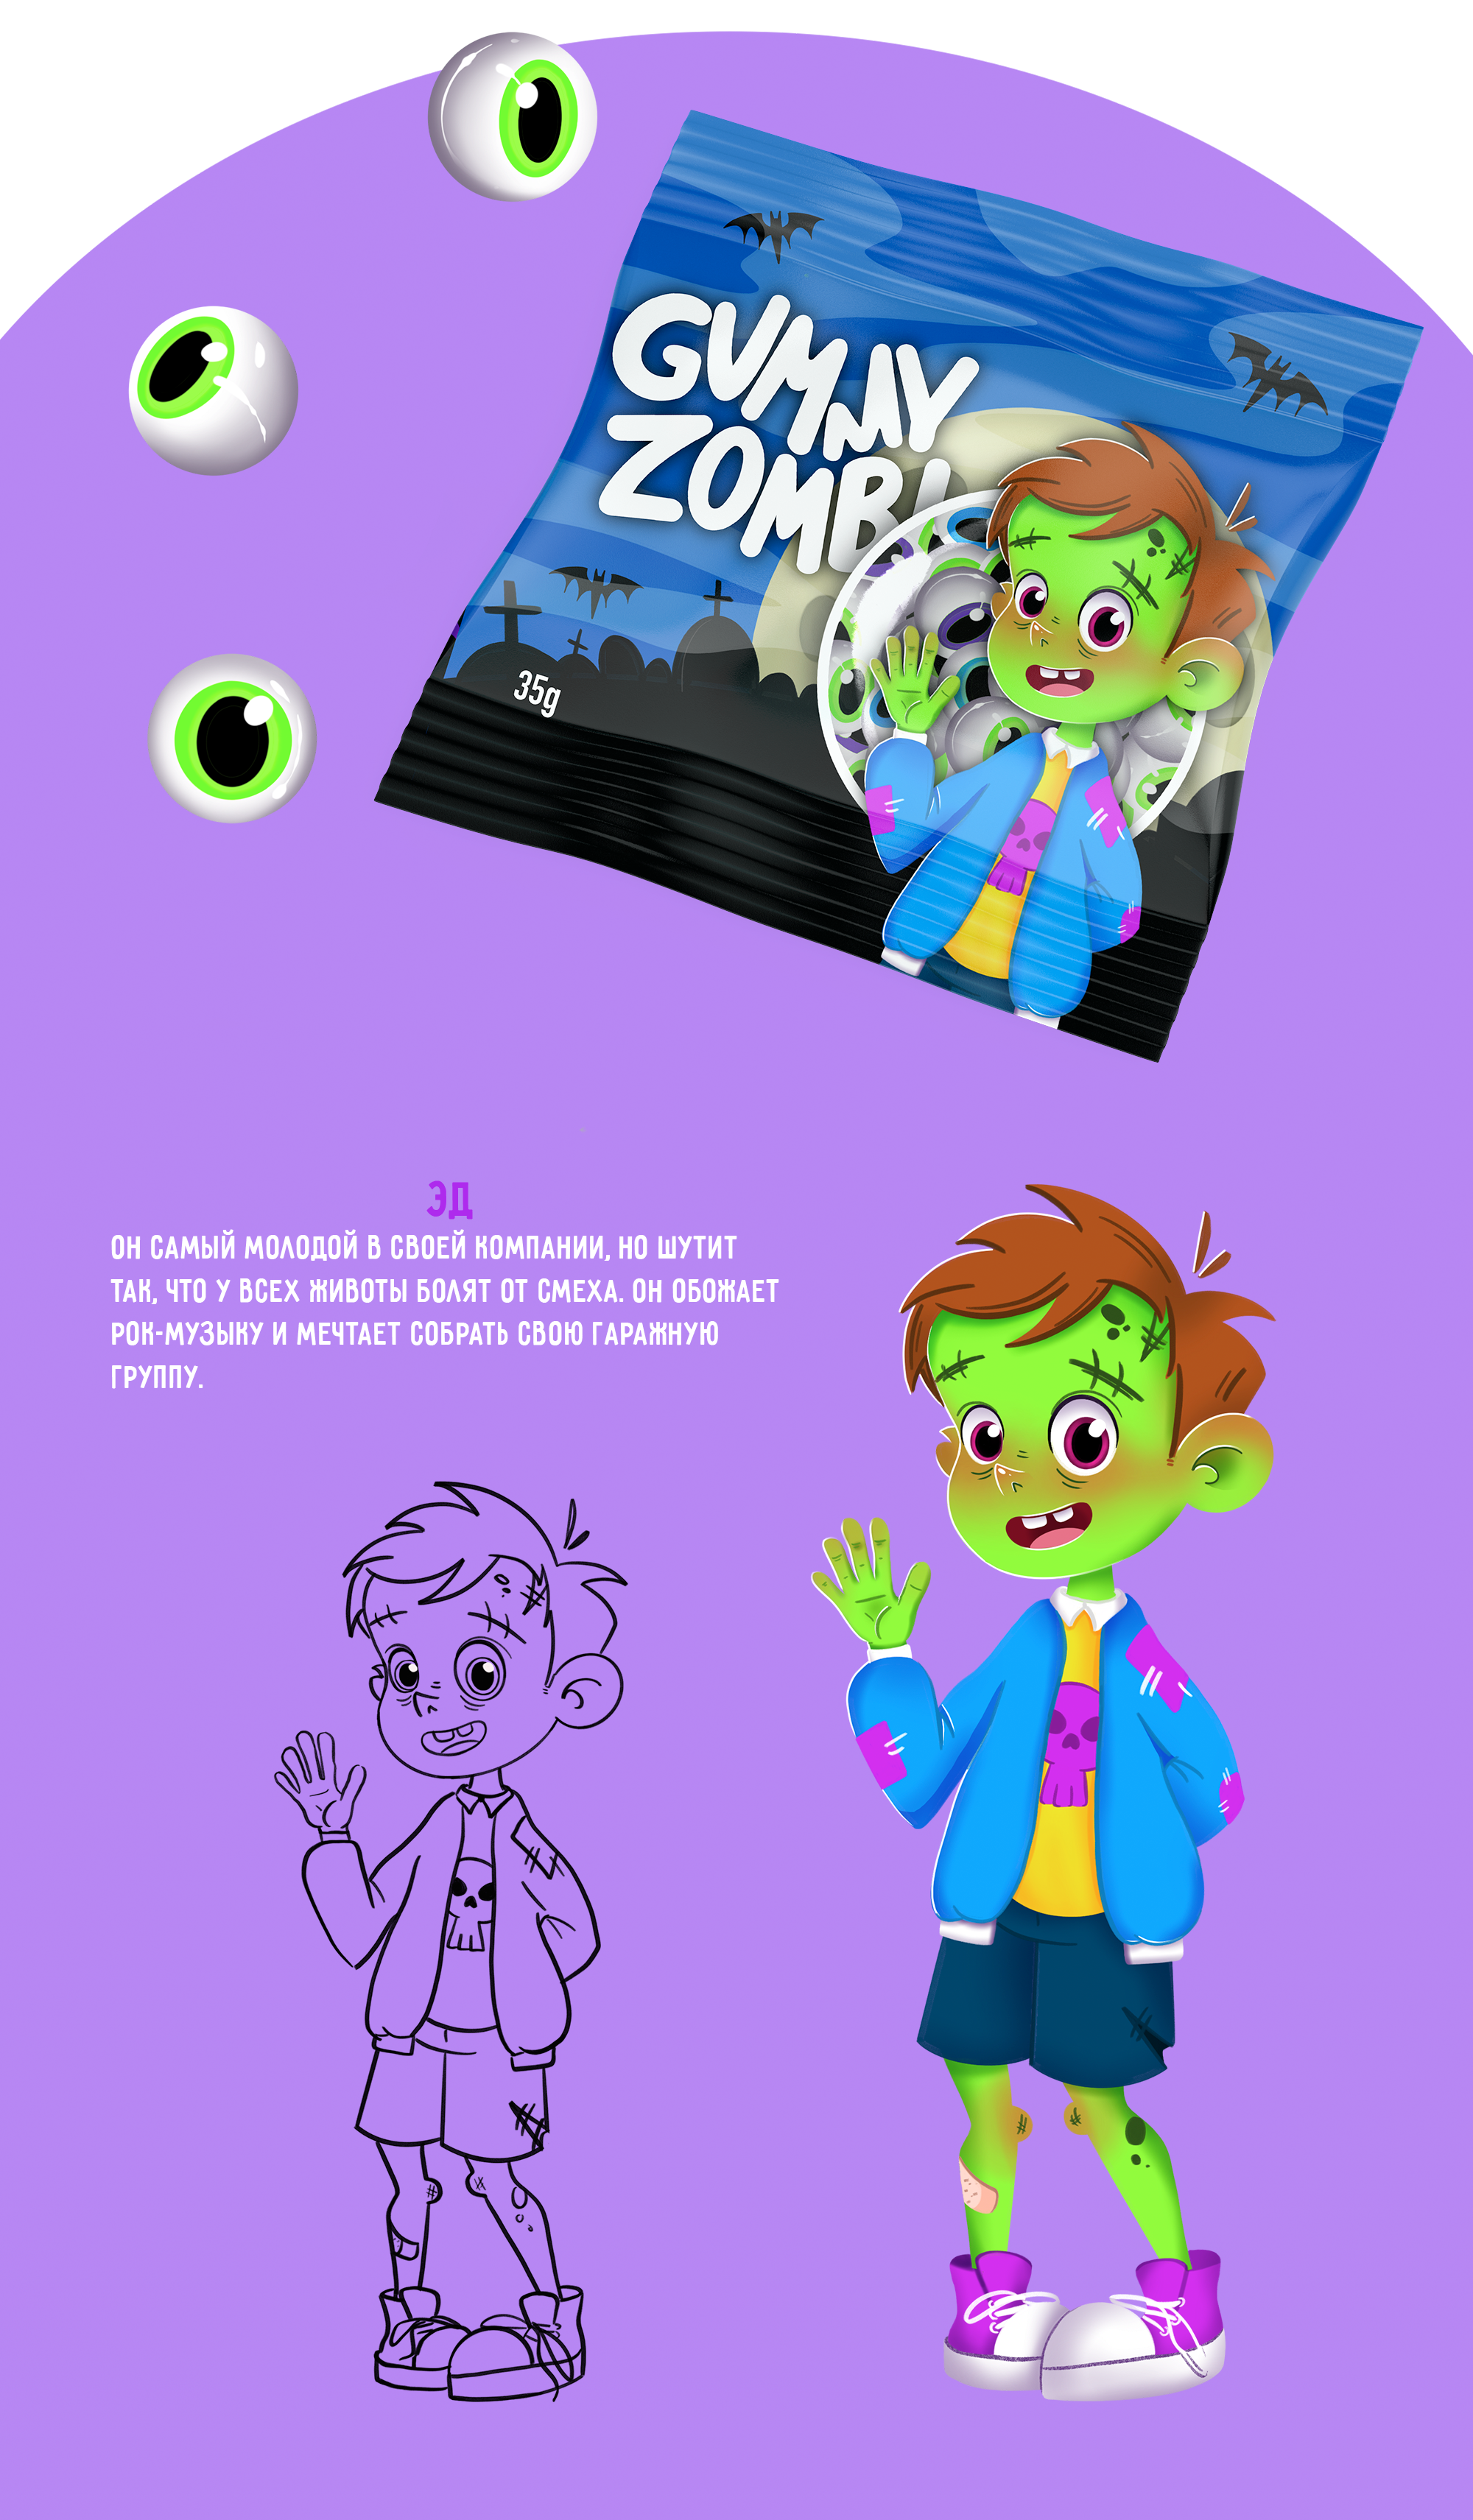 Дизайн упаковки "Gummy Zombi" и персонажи-зомби. — Изображение №4 — Иллюстрация на Dprofile